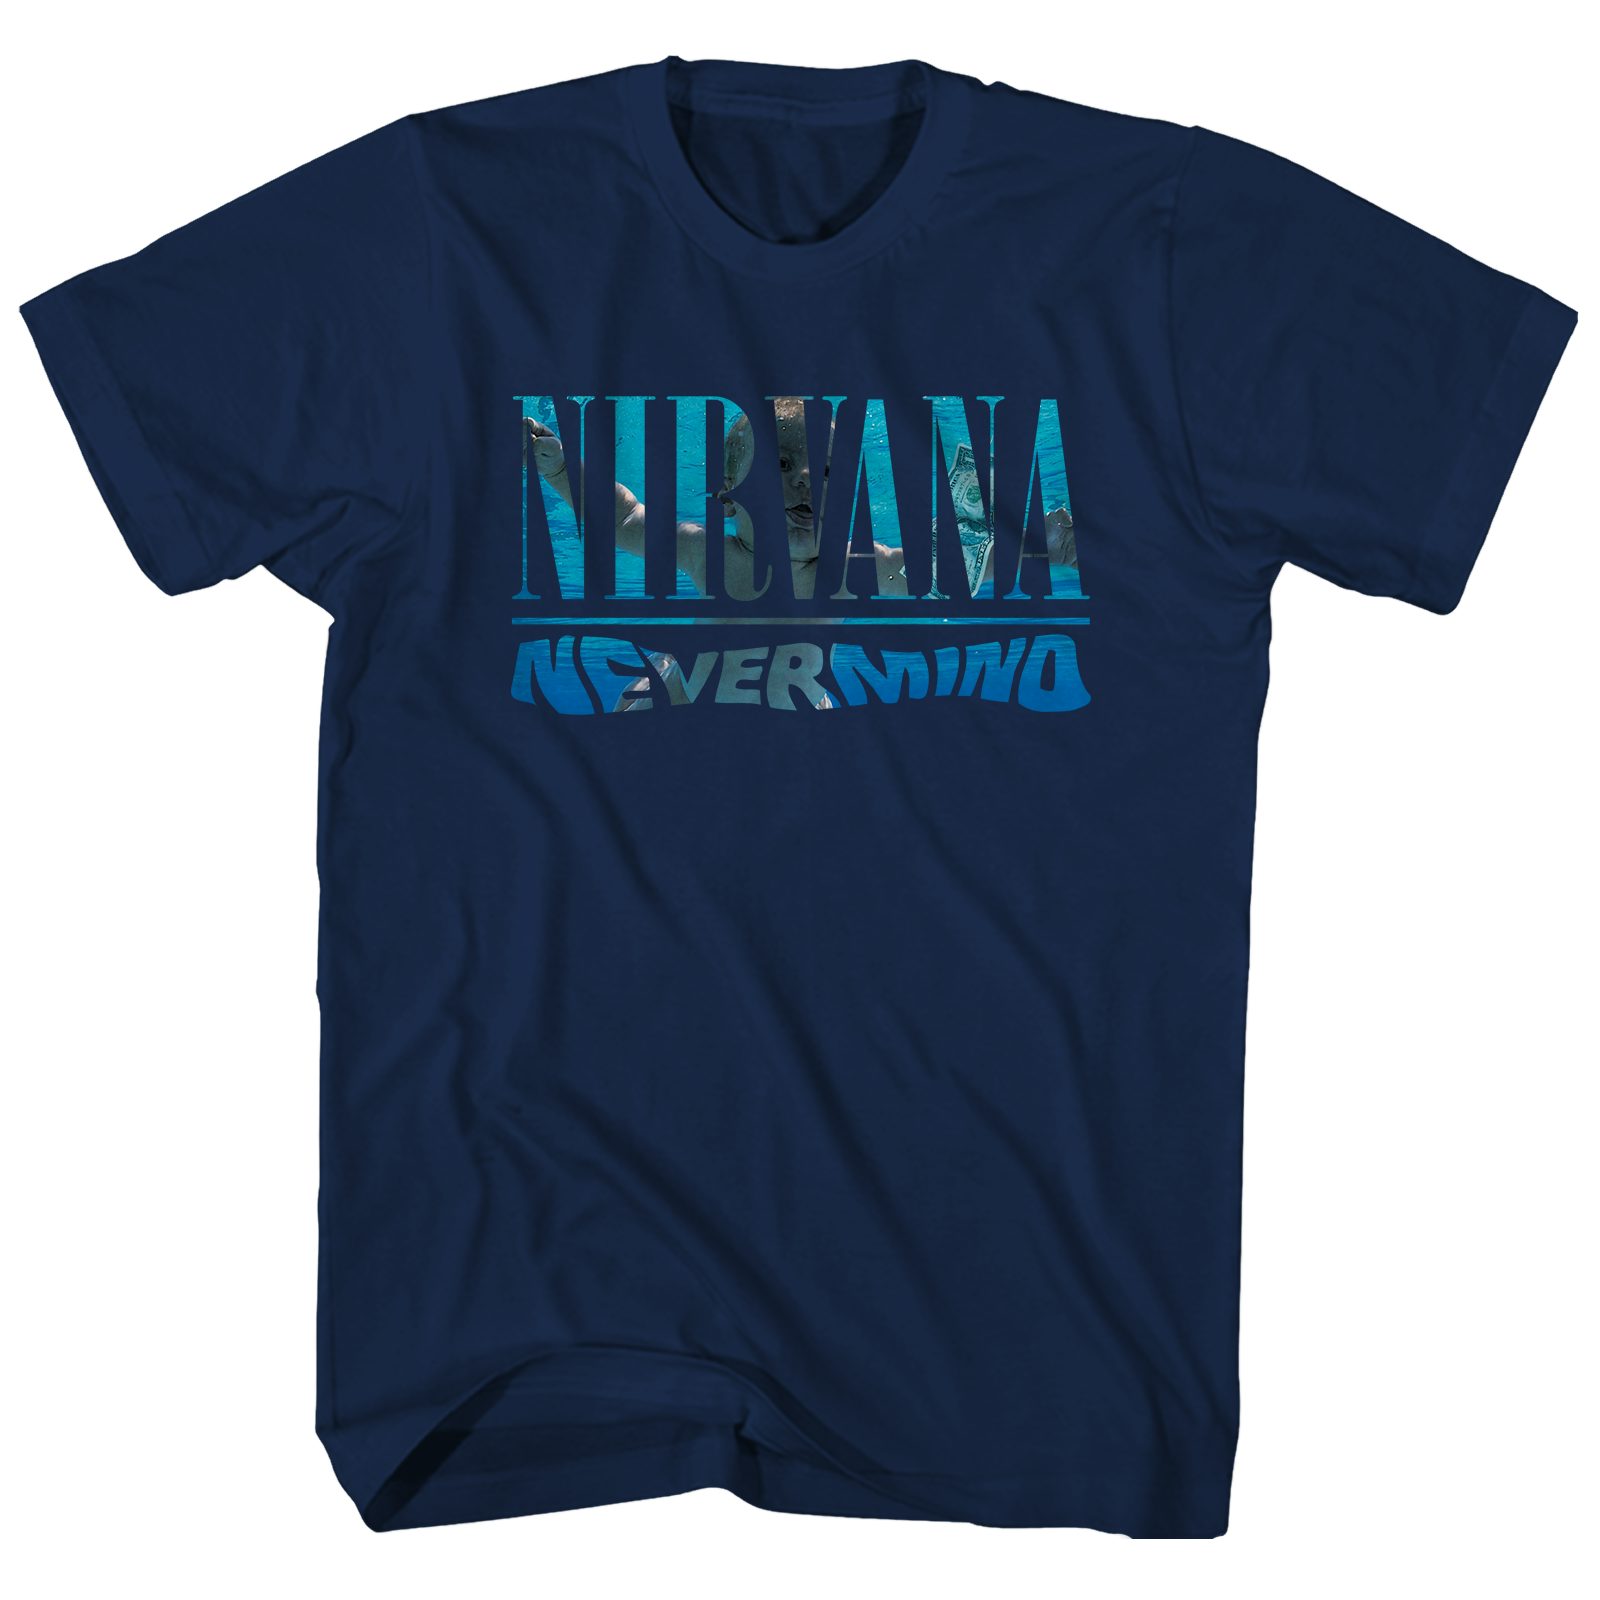 業販Nirvana nevermind Tシャツ トップス